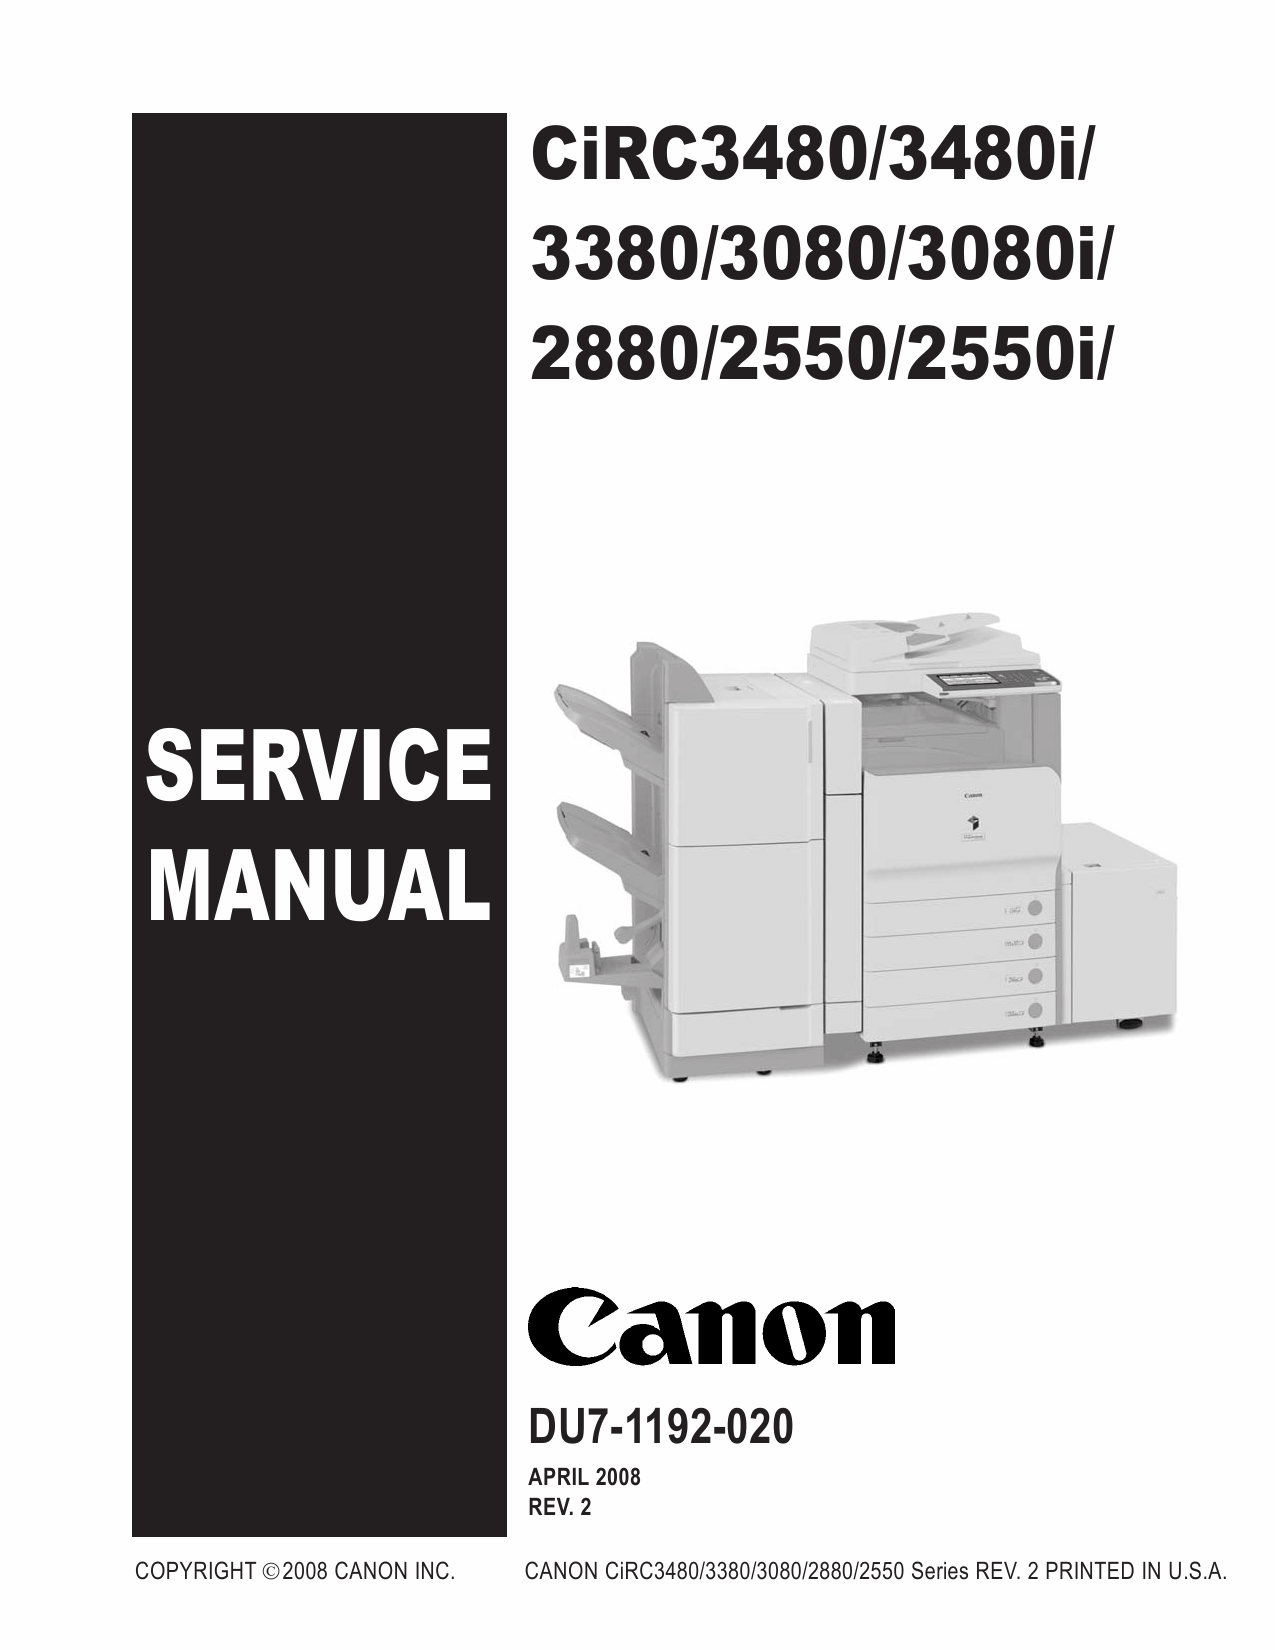 Canon imageRUNNER-iR C2550 2380 3080 3480 3580 i Service Manual-1